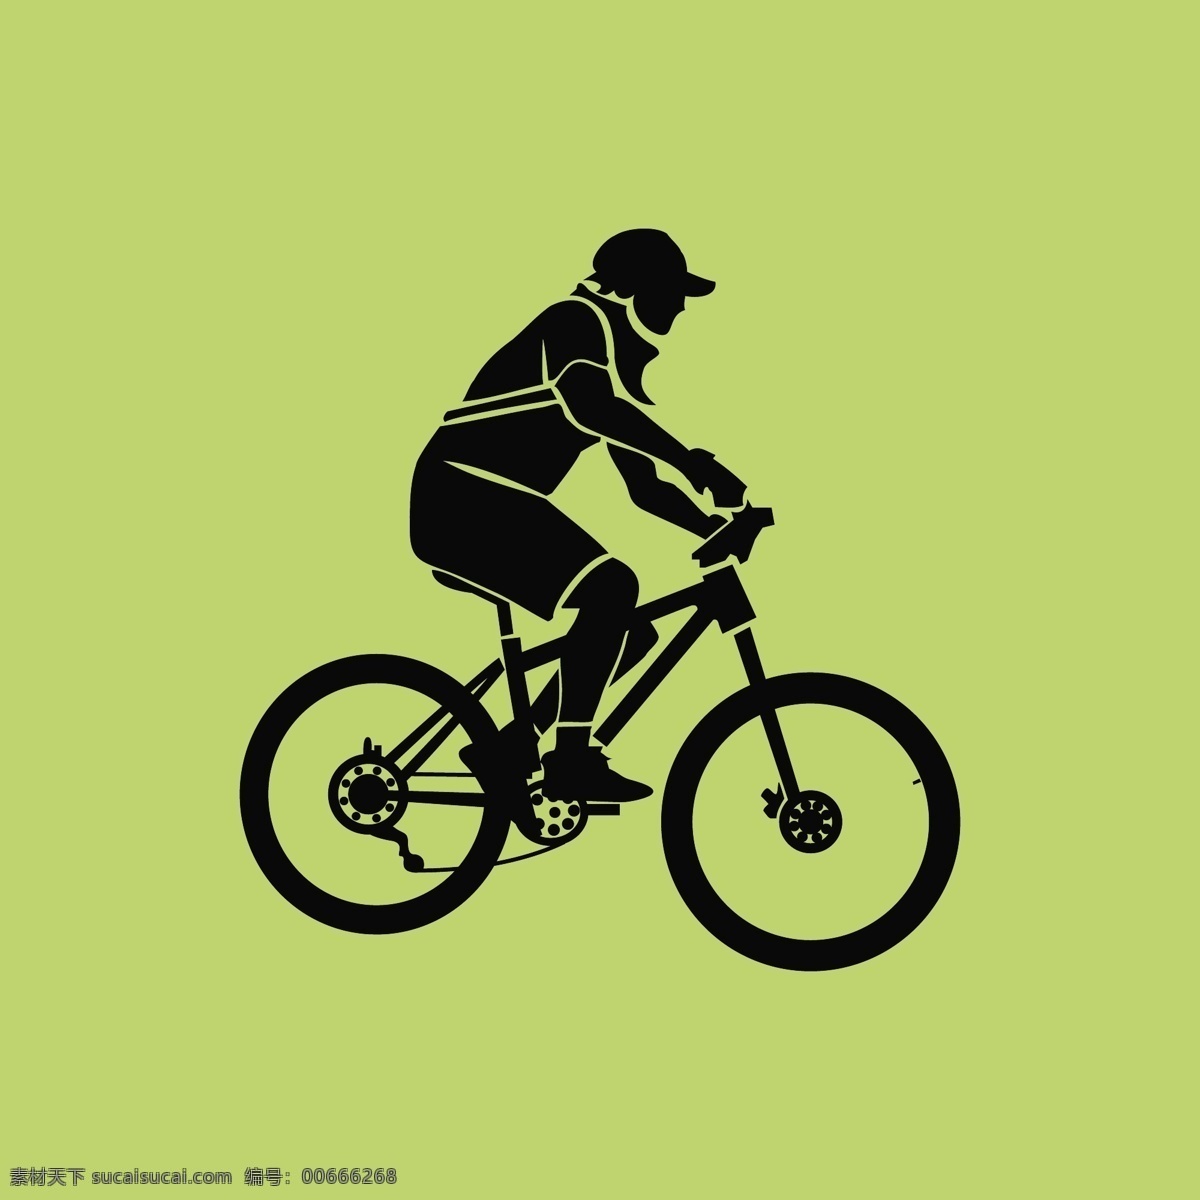 自行车图标 小图标 小标志 图标 logo 标志 vi icon 标识 图标设计 logo设计 标志设计 自行车 单车 交通工具 车辆 山地车 赛车 bike 手绘自行车 卡通自行车 手绘 自行车素材 骑行队 自行车俱乐部 图标图表 标志图标 企业